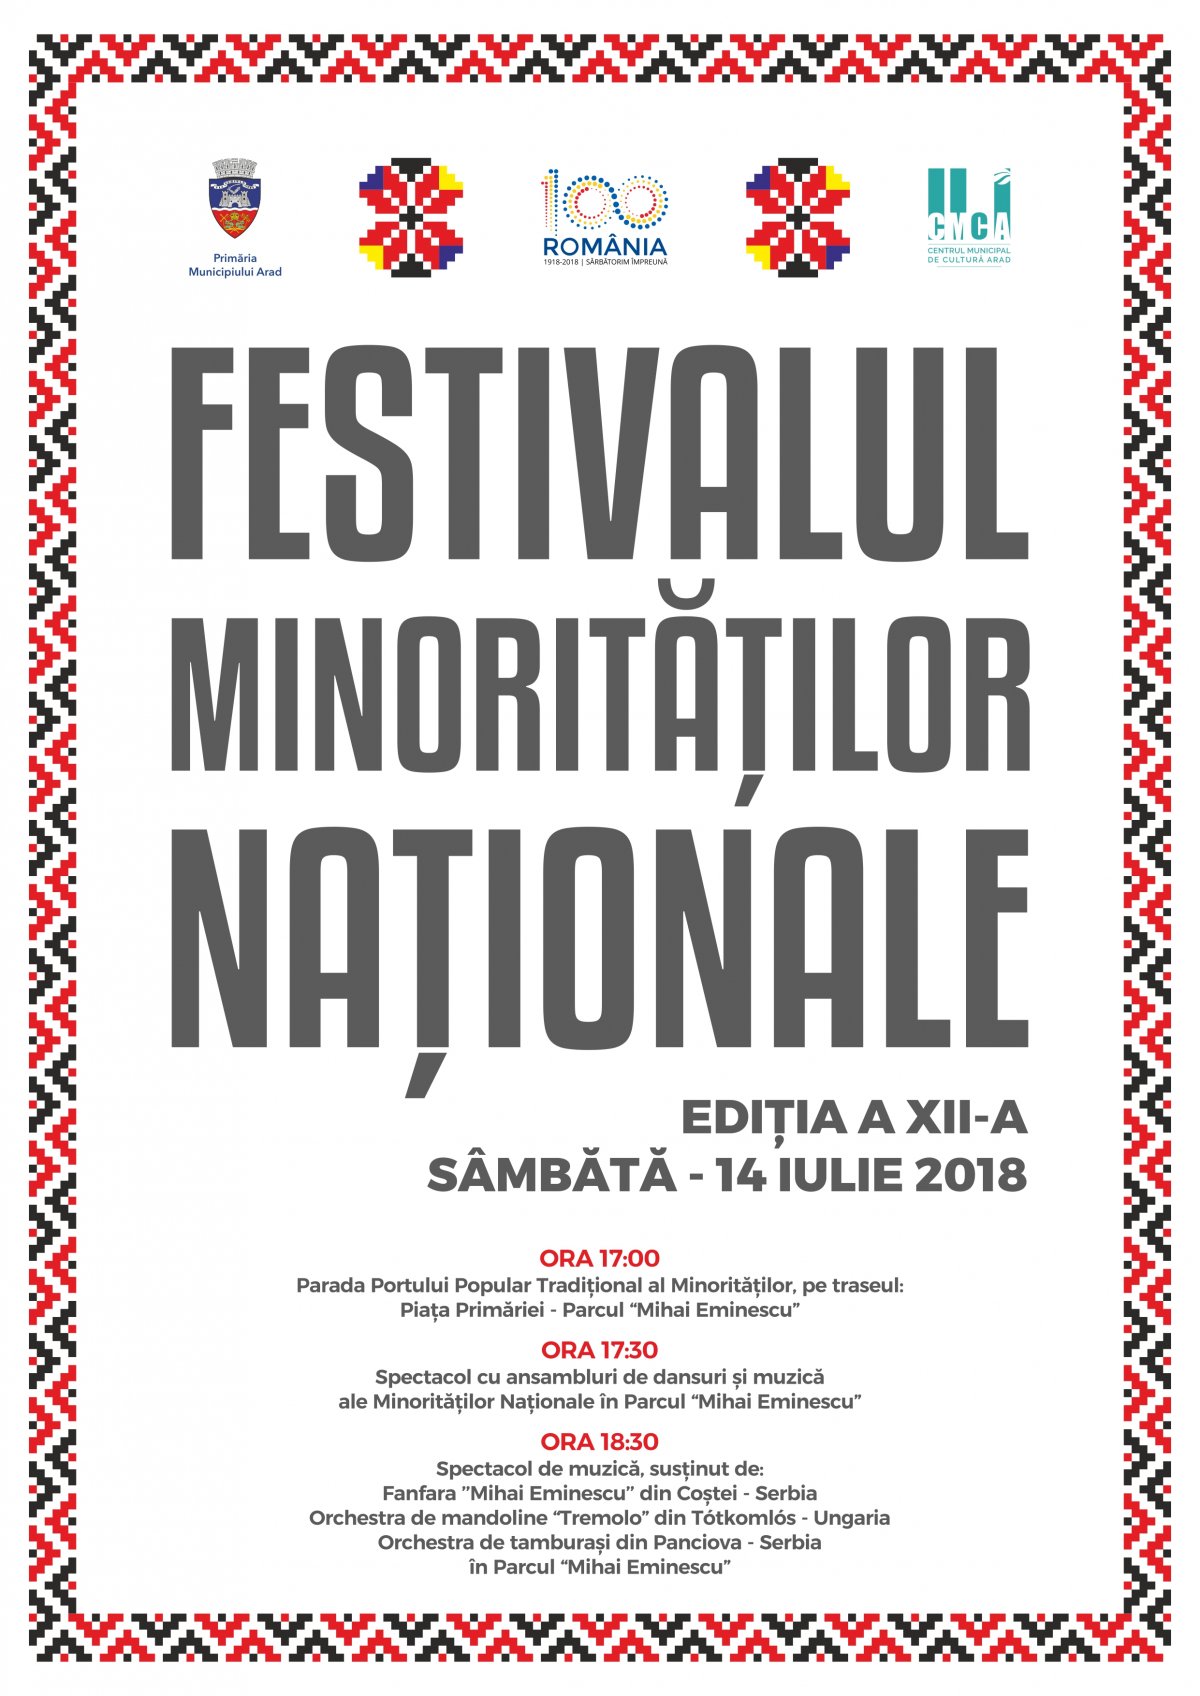 Festivalul Minorităţilor Naţionale la Arad, ediţia a XII-a